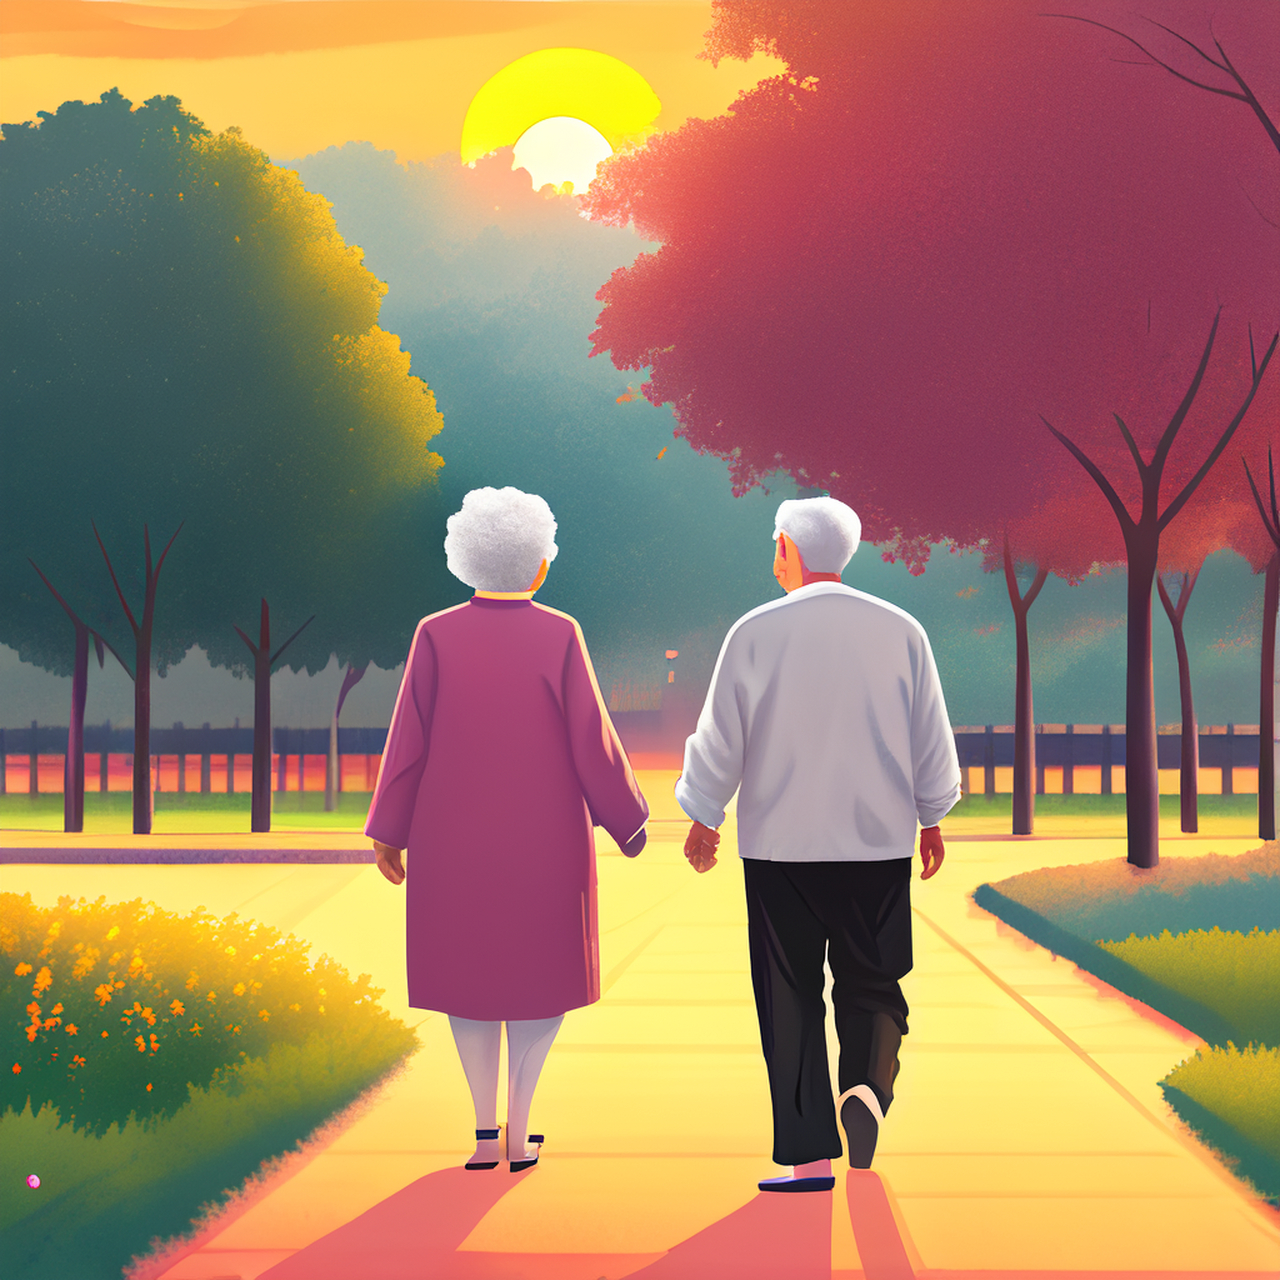 画一副夕阳西下,一对老年夫妻相互搀扶在公园散步